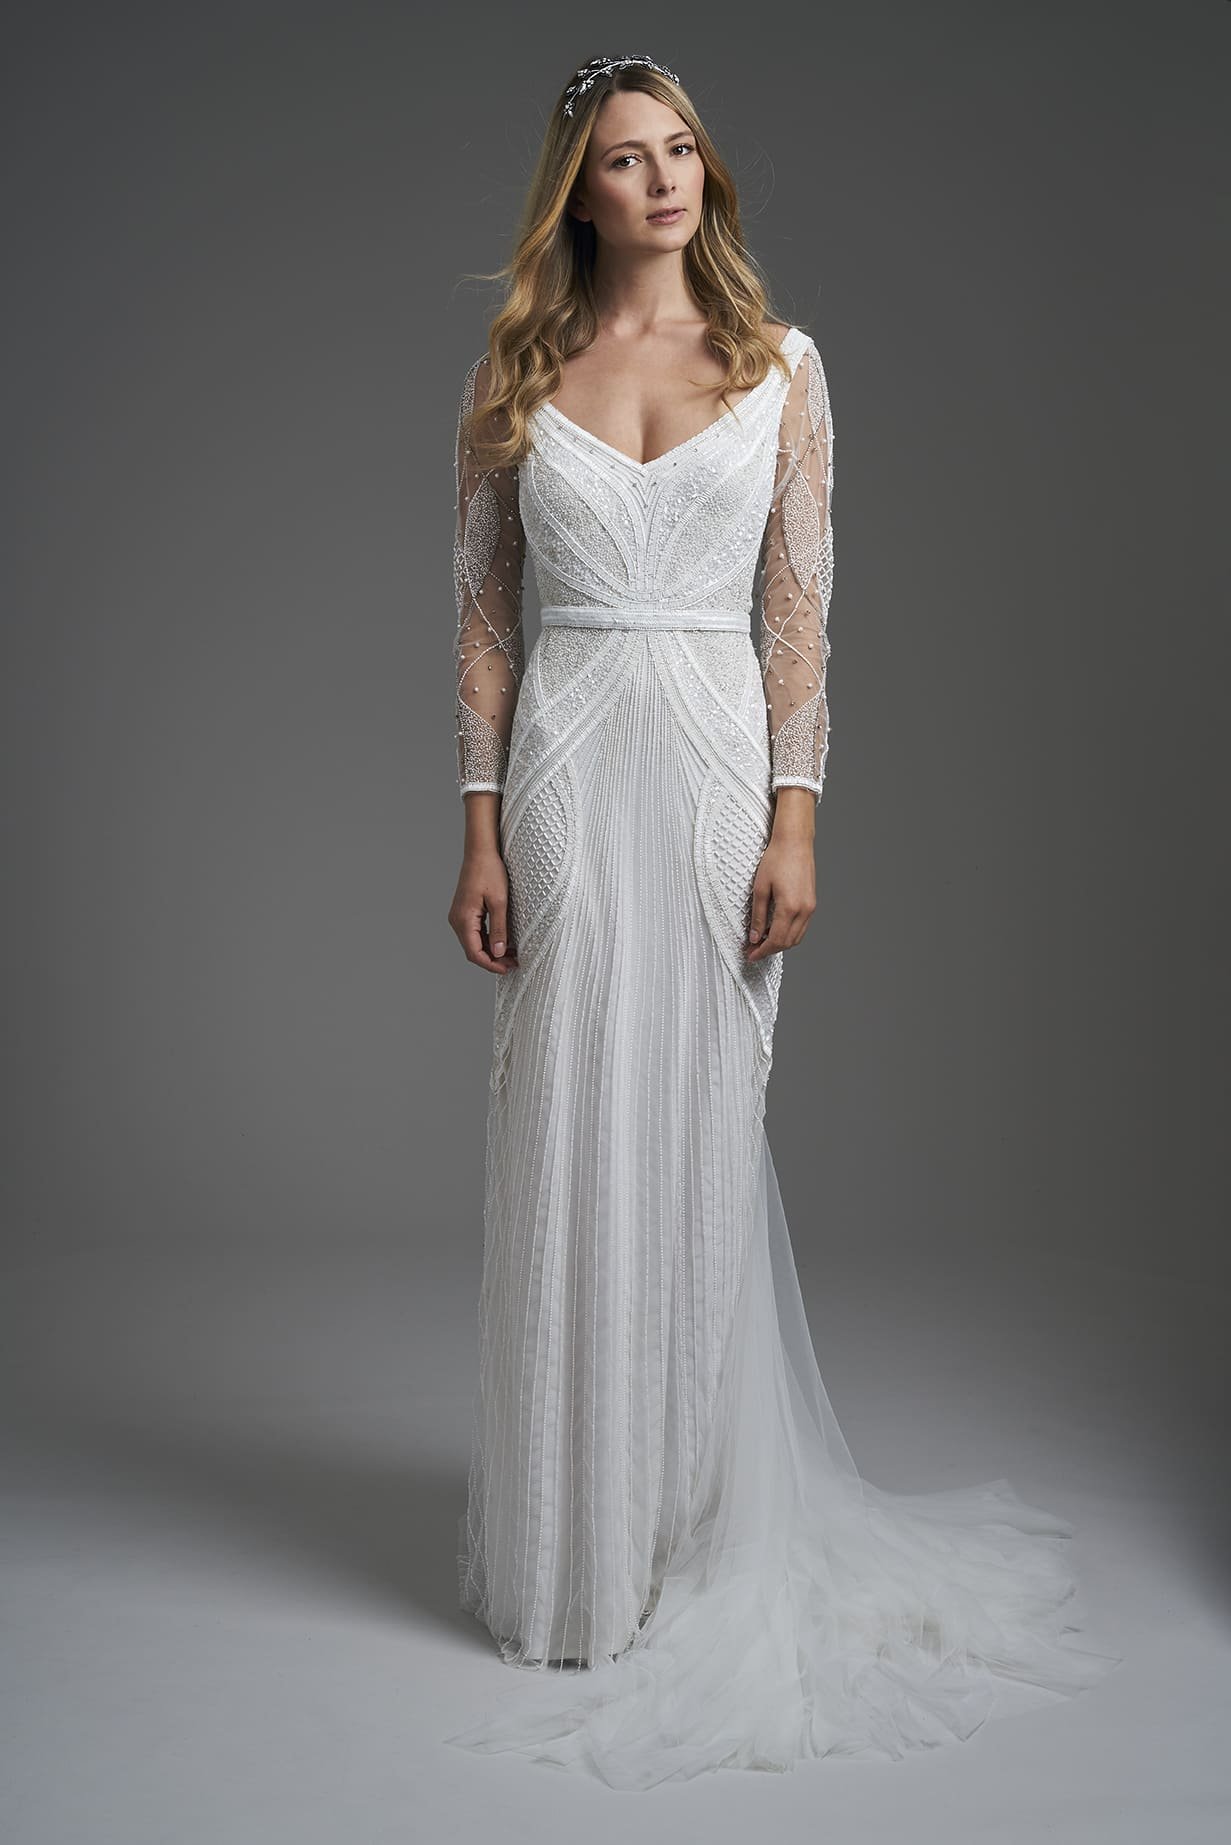 Eliza-Jane-Howell-Wedding-Dress-Chrysler.jpg